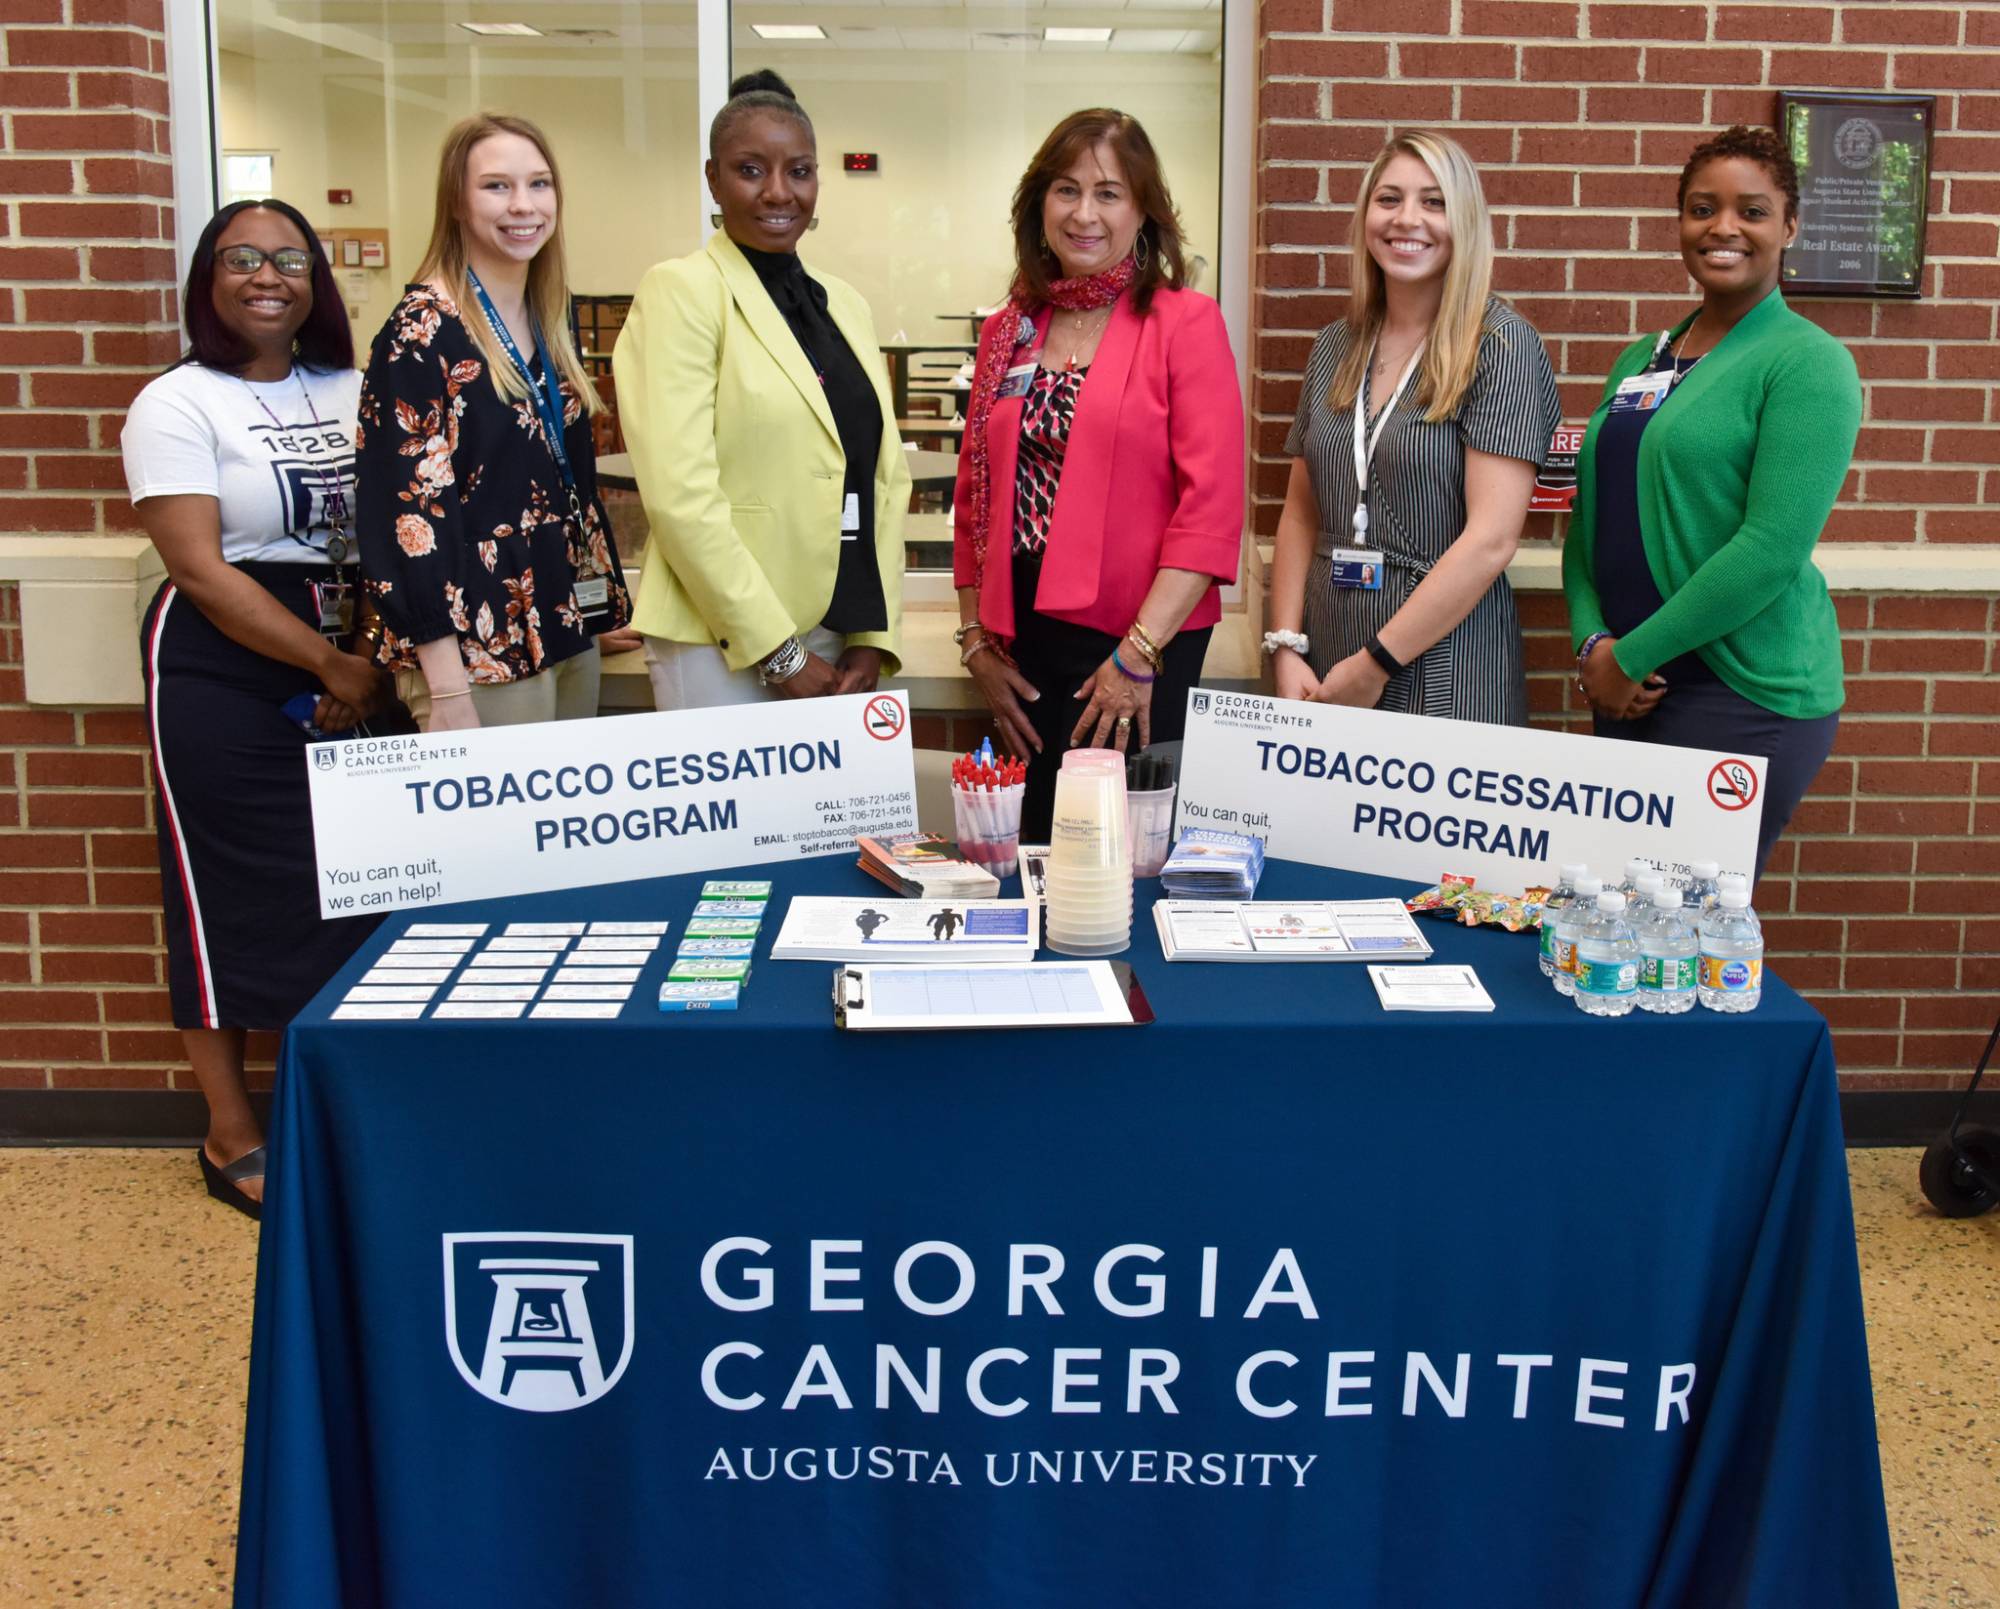 Georgia Cancer Center Tobacco Cessation Program team